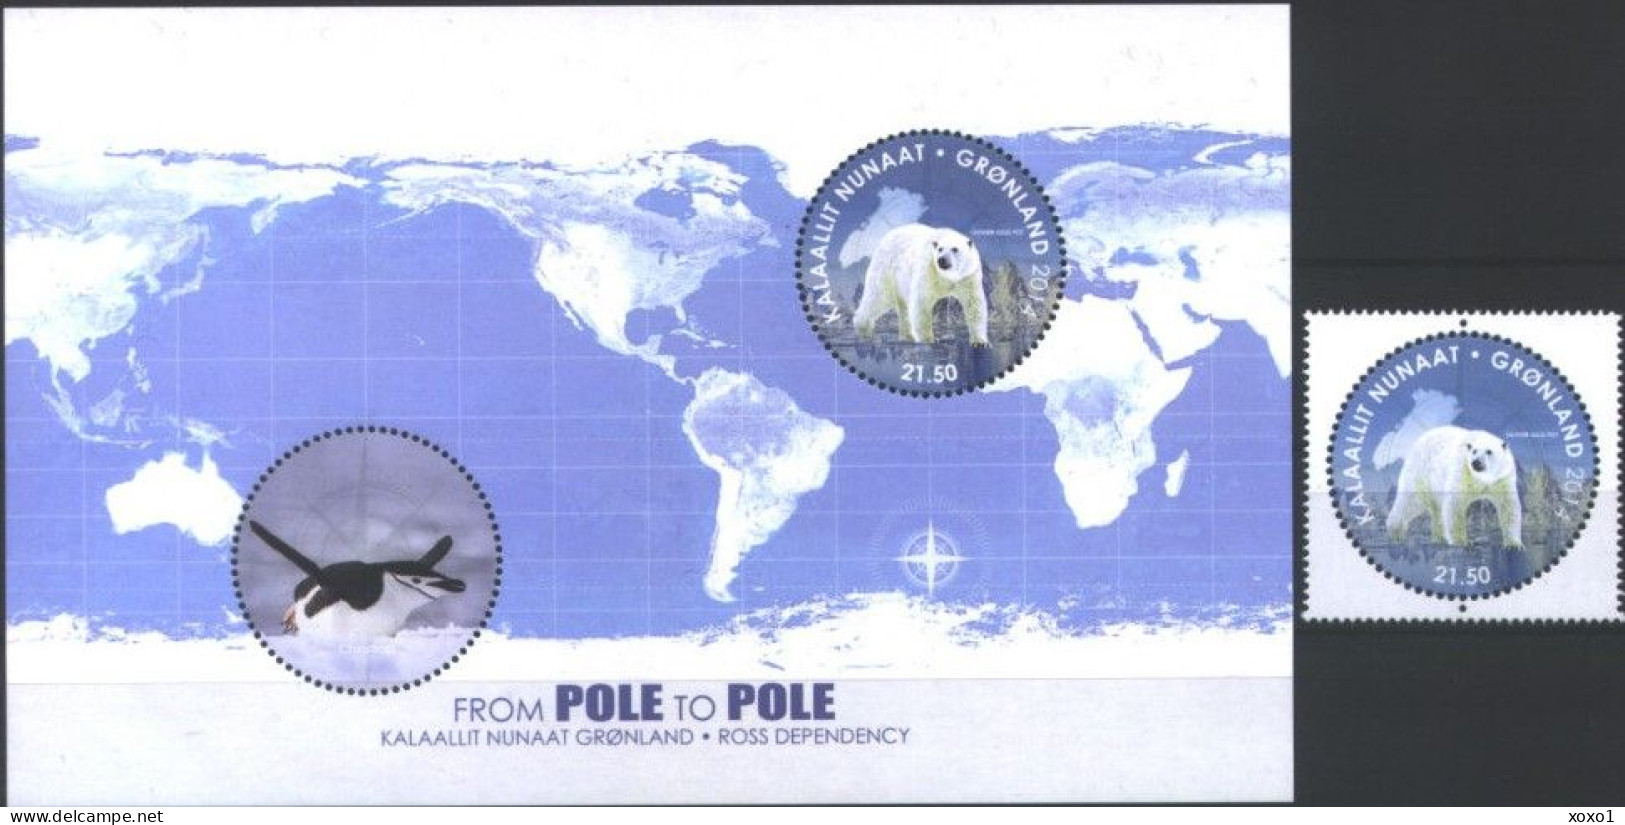 Greenland 2014 MiNr. 680 (Block 70) Dänemark Grönland Ross Antarctica Pole Bears BIRDS Penguins 1v + S\sh MNH** 13.00 € - Arctic Wildlife